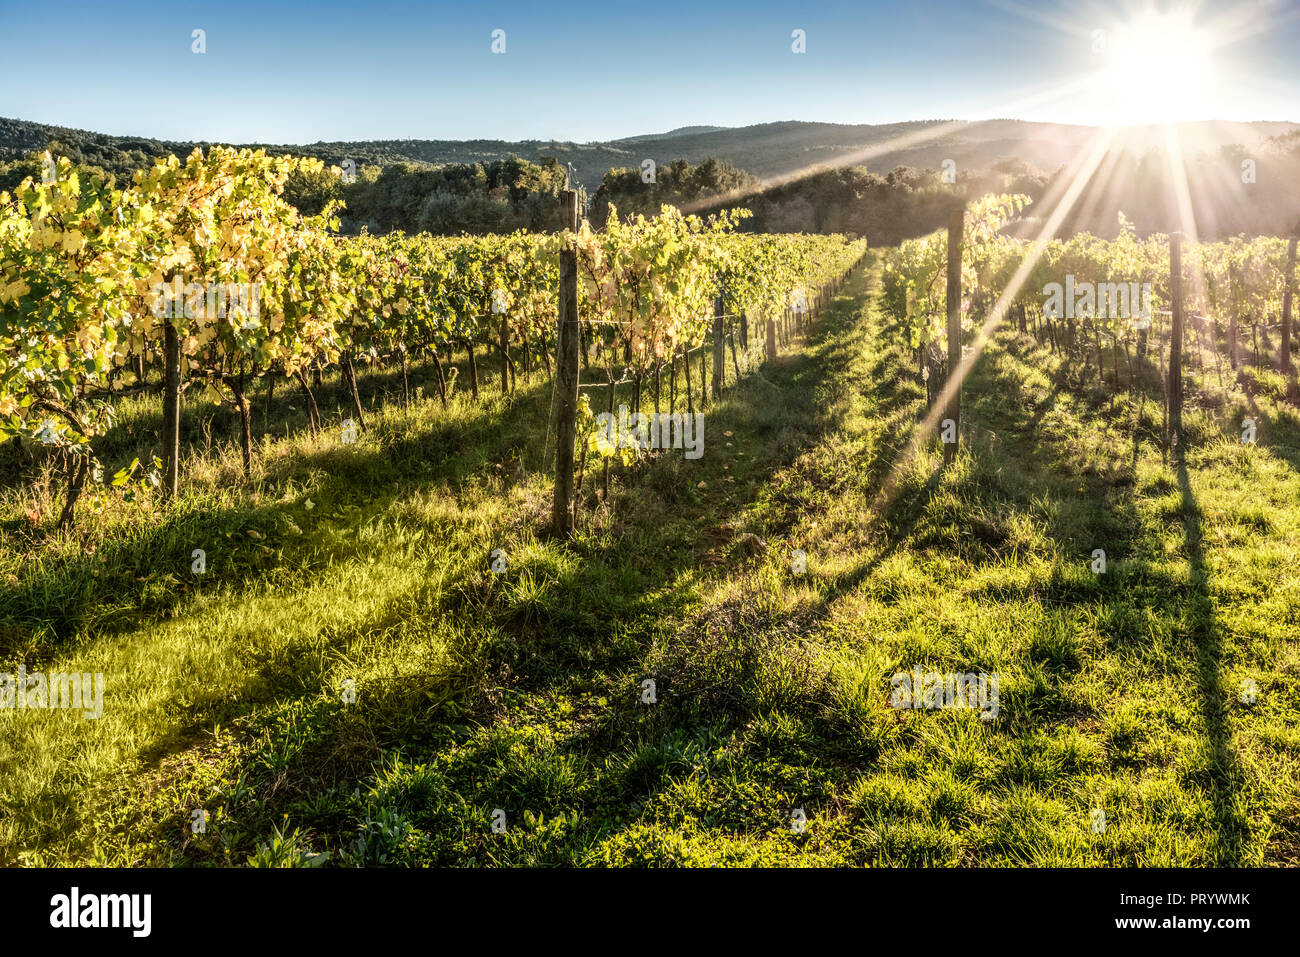 Italy, Tuscany, vineyard in backlight Stock Photo